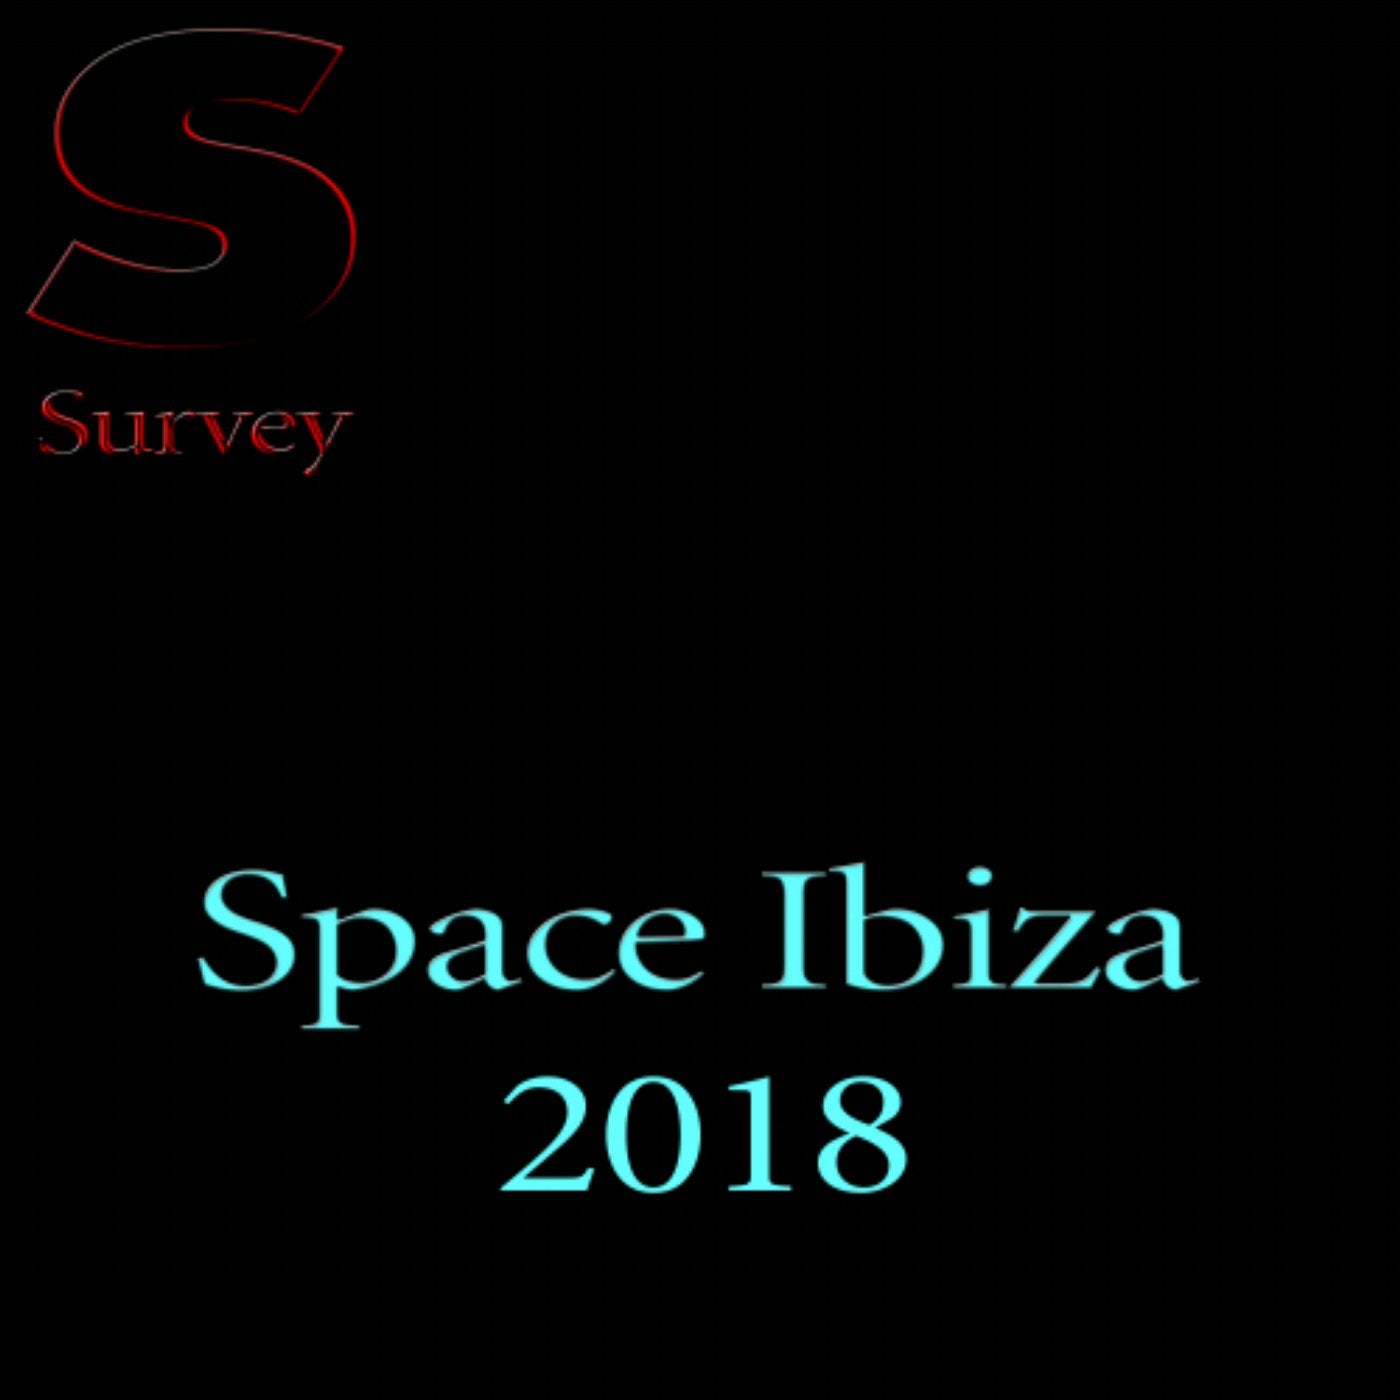 Space Ibiza 2018